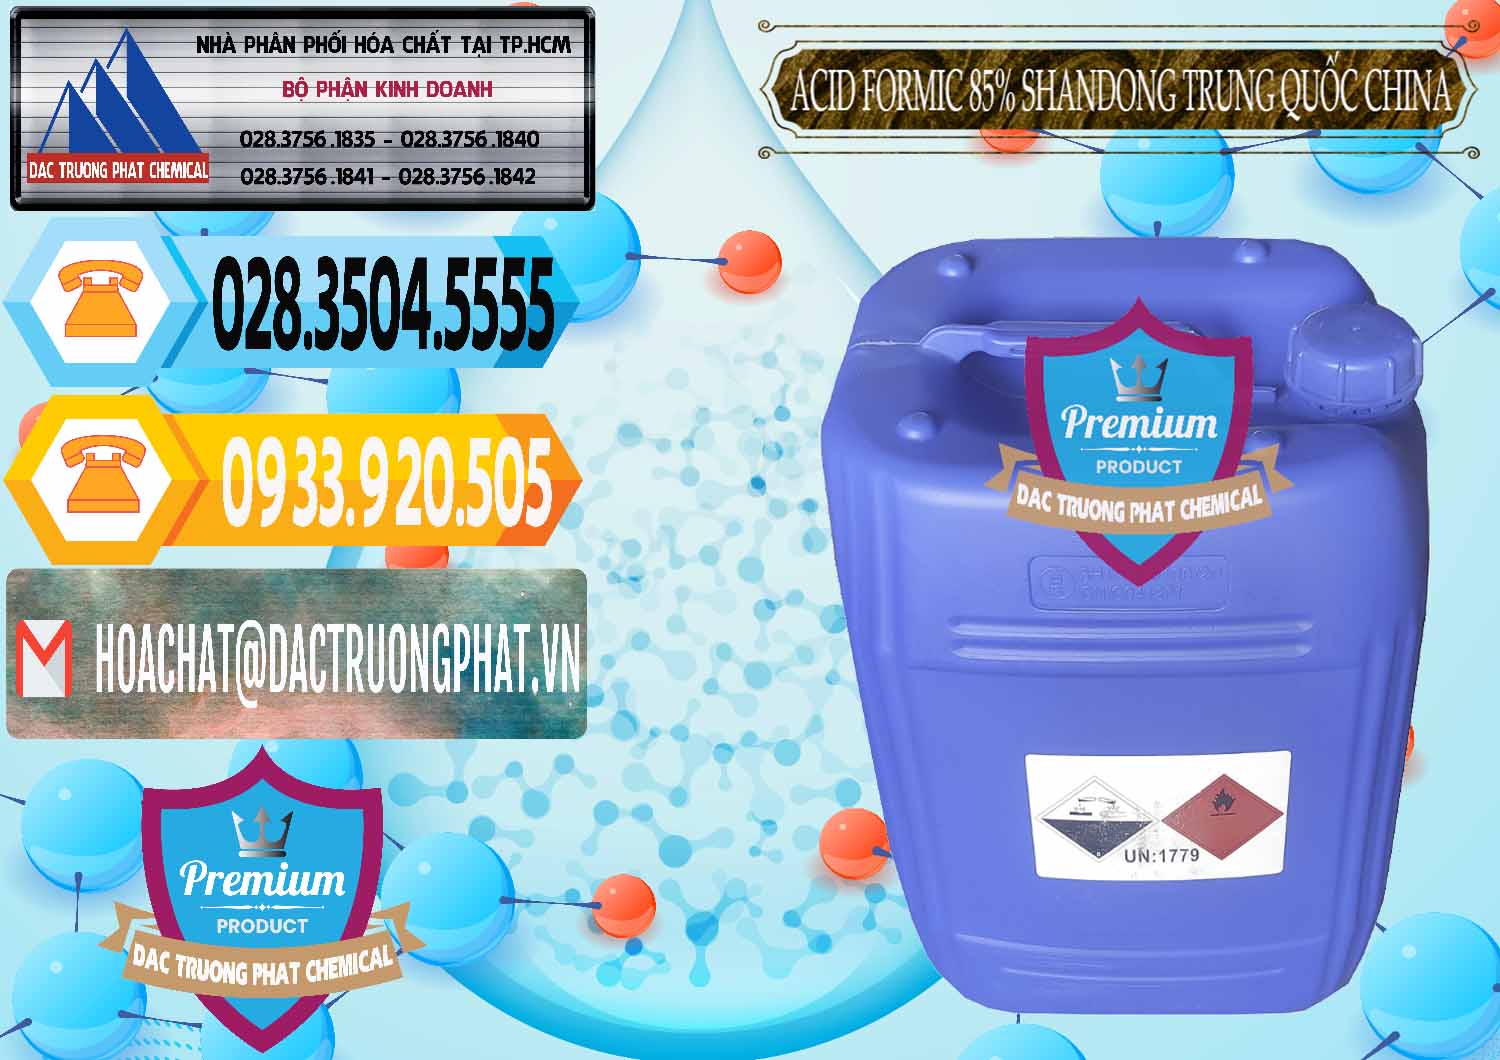 Công ty cung cấp _ bán Acid Formic - Axit Formic 85% Shandong Trung Quốc China - 0235 - Đơn vị chuyên nhập khẩu và phân phối hóa chất tại TP.HCM - hoachattayrua.net